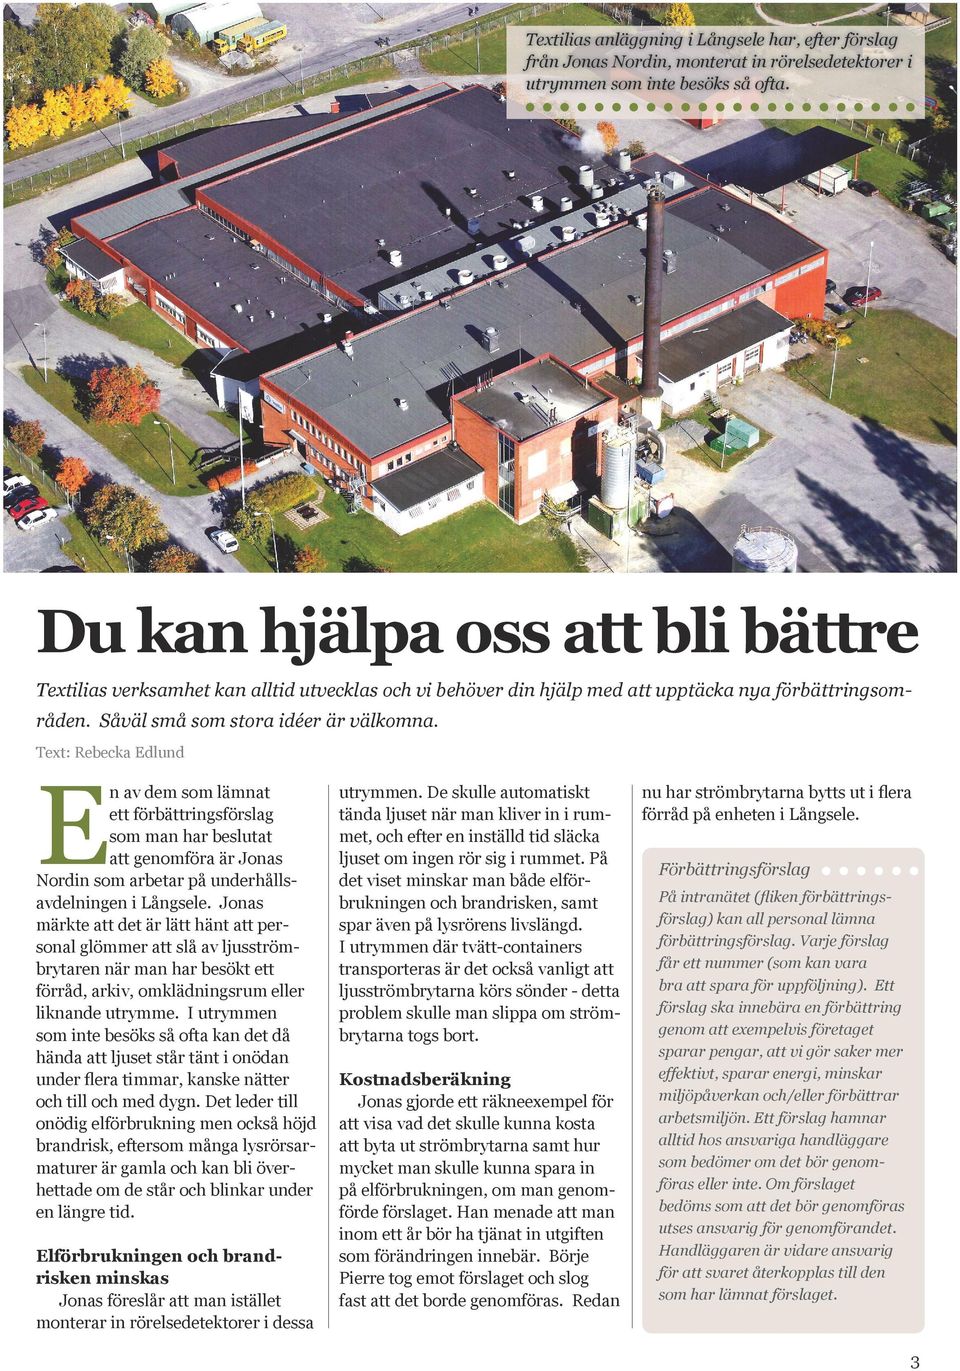 Text: Rebecka Edlund En av dem som lämnat ett förbättringsförslag som man har beslutat att genomföra är Jonas Nordin som arbetar på underhållsavdelningen i Långsele.